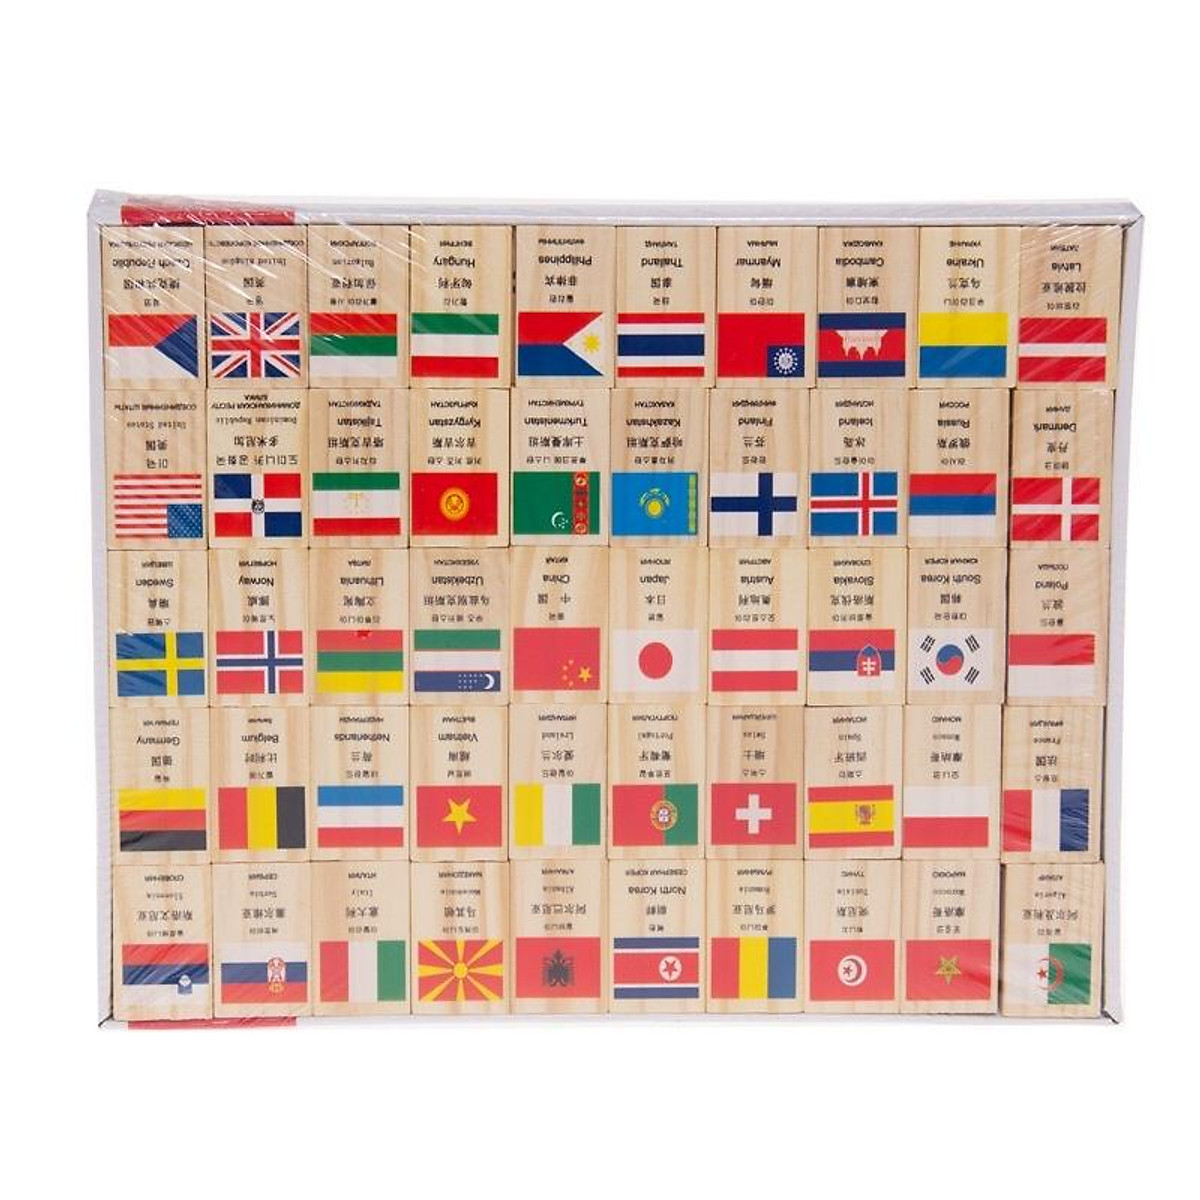 Domino 100 quân cờ bằng gỗ đồ chơi cờ gỗ hình các nước quốc gia trên